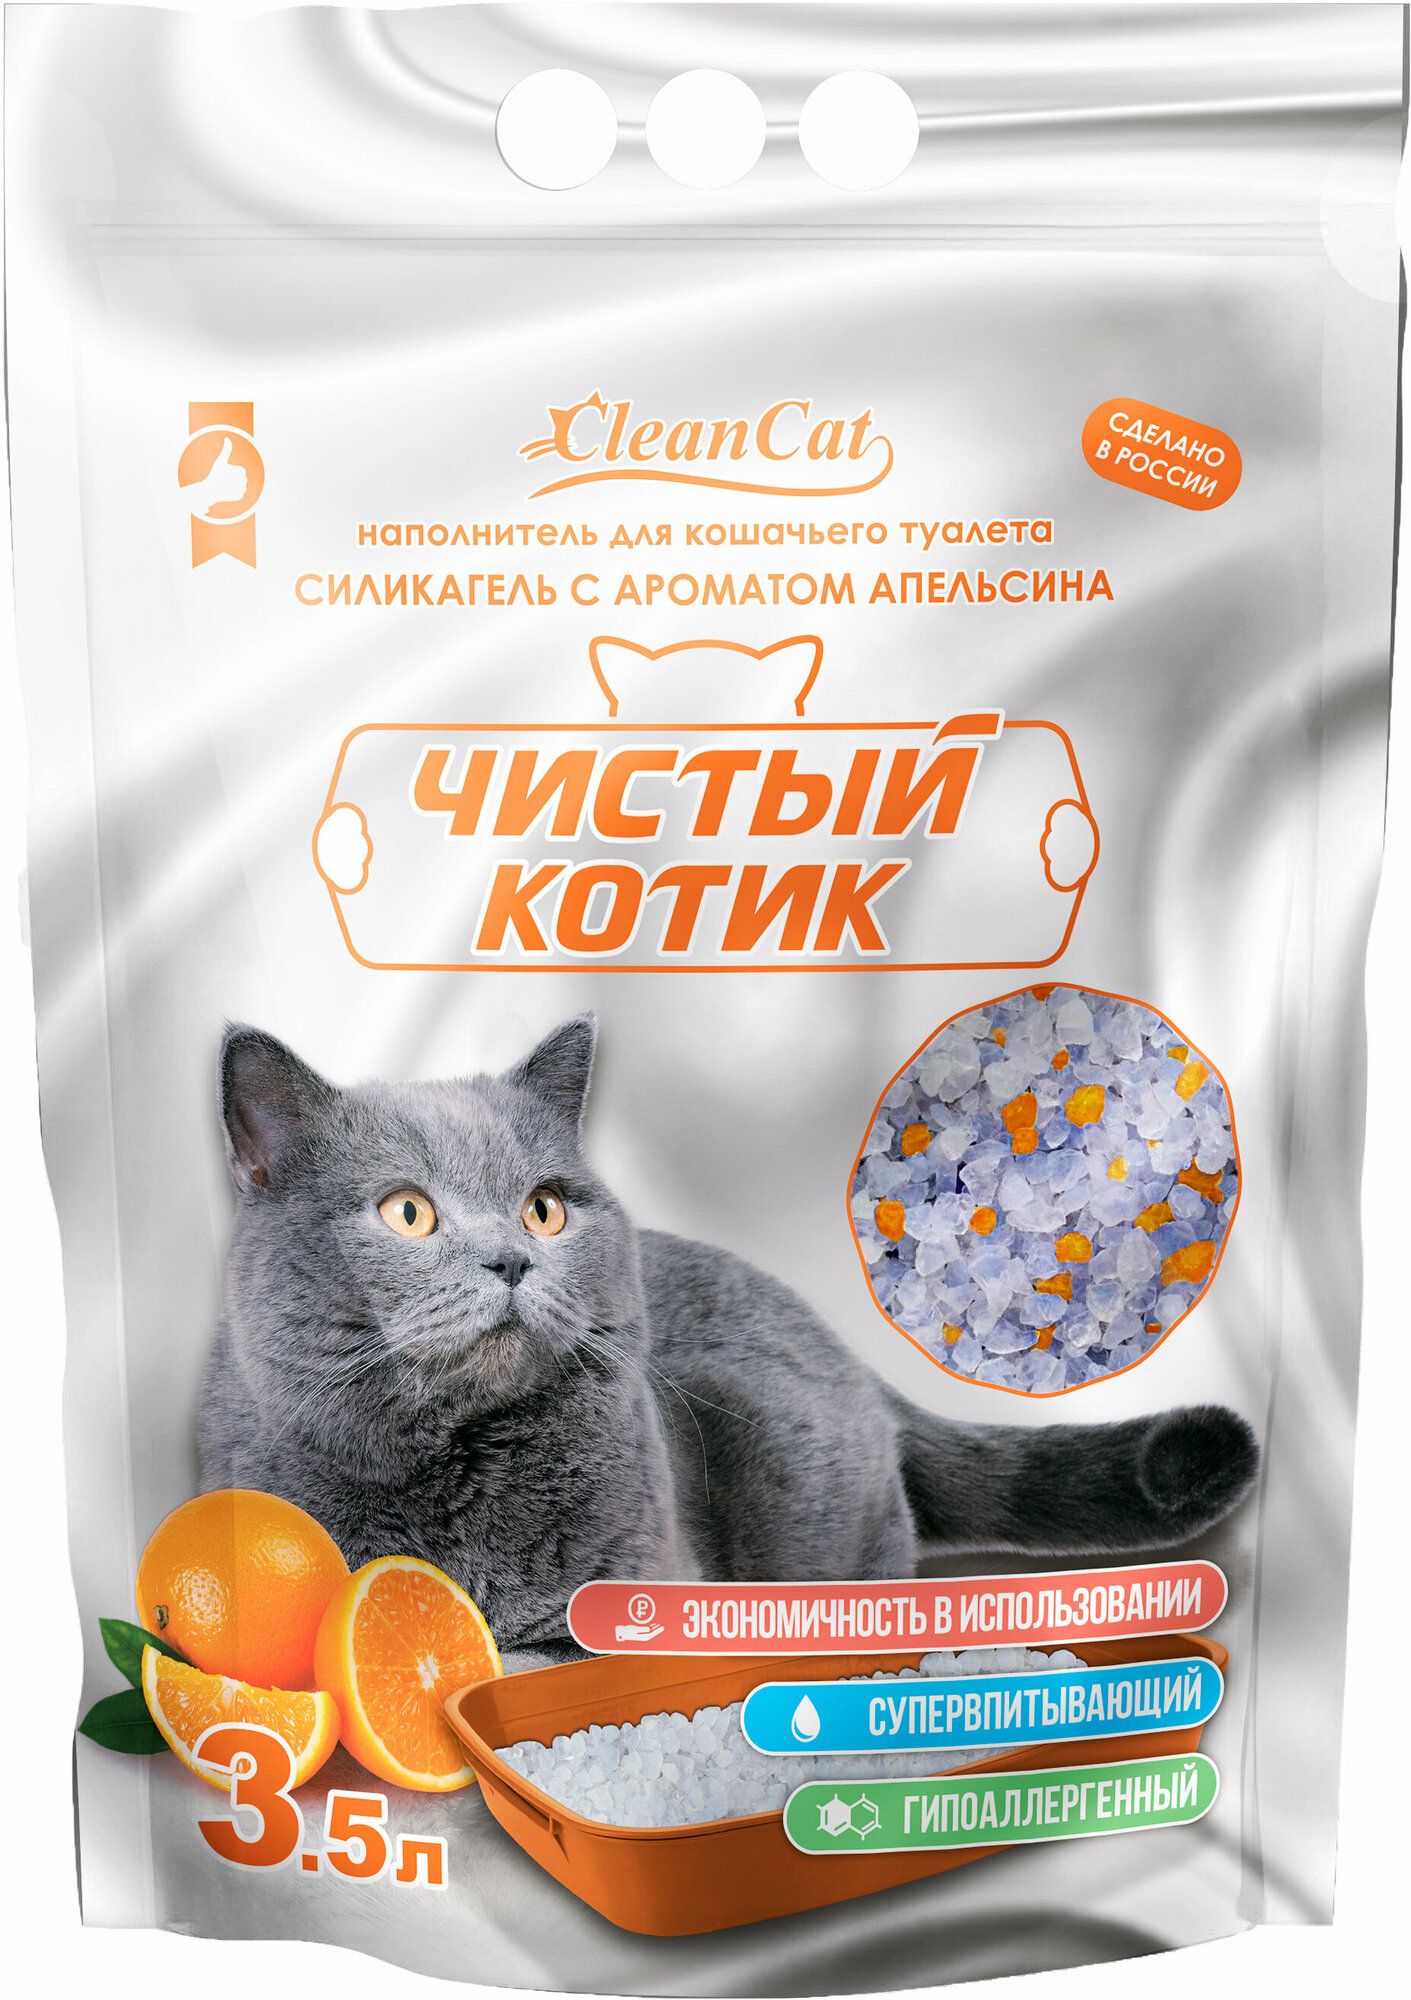 Наполнитель силикагелевый Чистый котик колотый с ароматом Апельсина 1,3 кг/3,5 л, аромат Апельсина